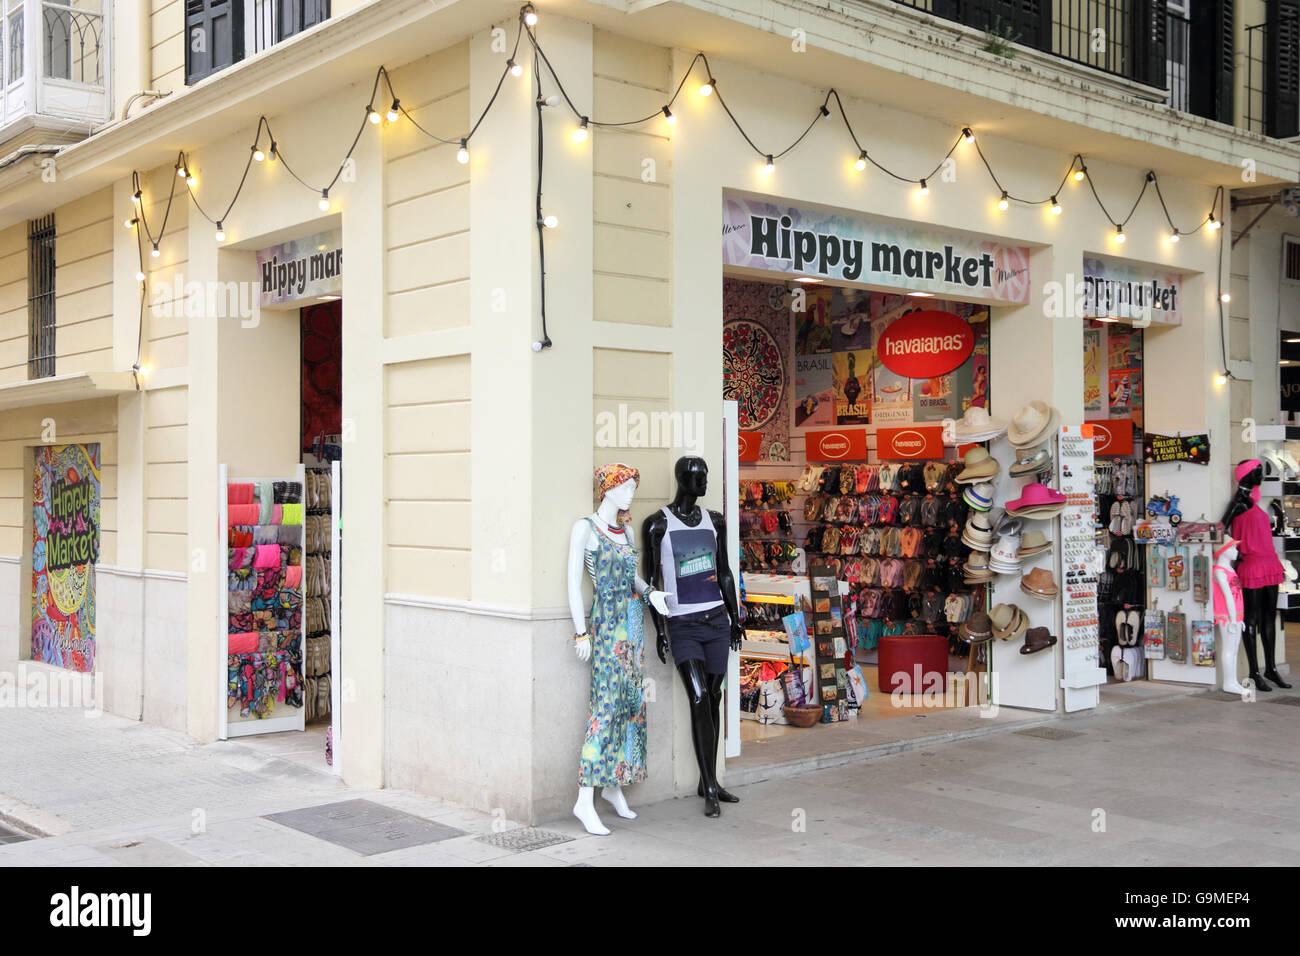 Marché Hippie boutique Vêtements et accessoires, Palma, Majorque Banque D'Images